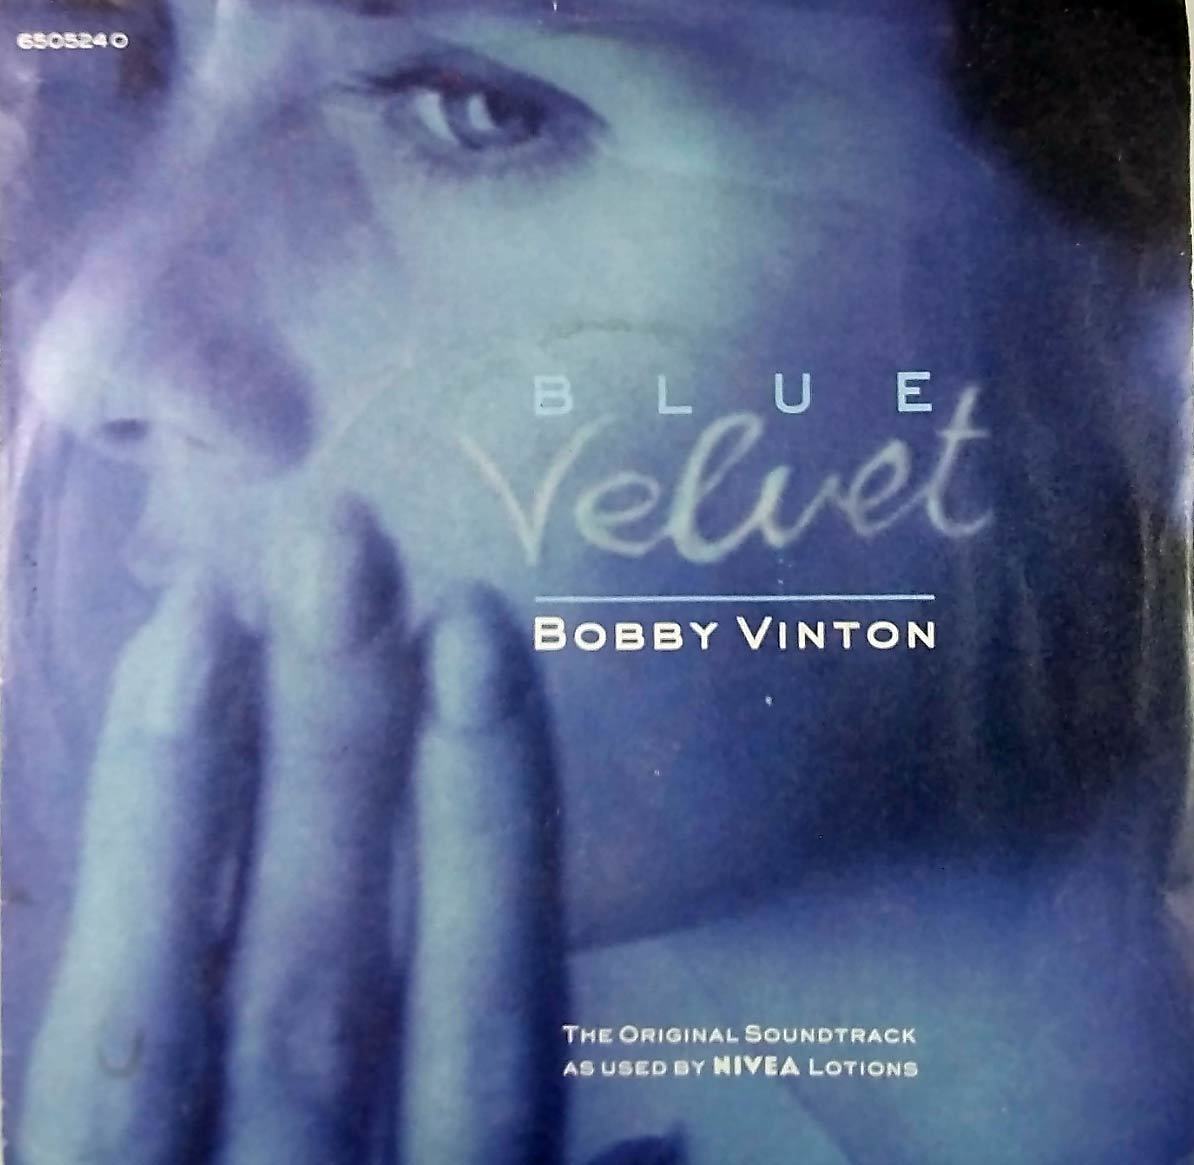 Primary image for Bobby Vinton - Blue Velvet / Blue on Blue [7" 45 rpm Single] UK Import PS Nivea